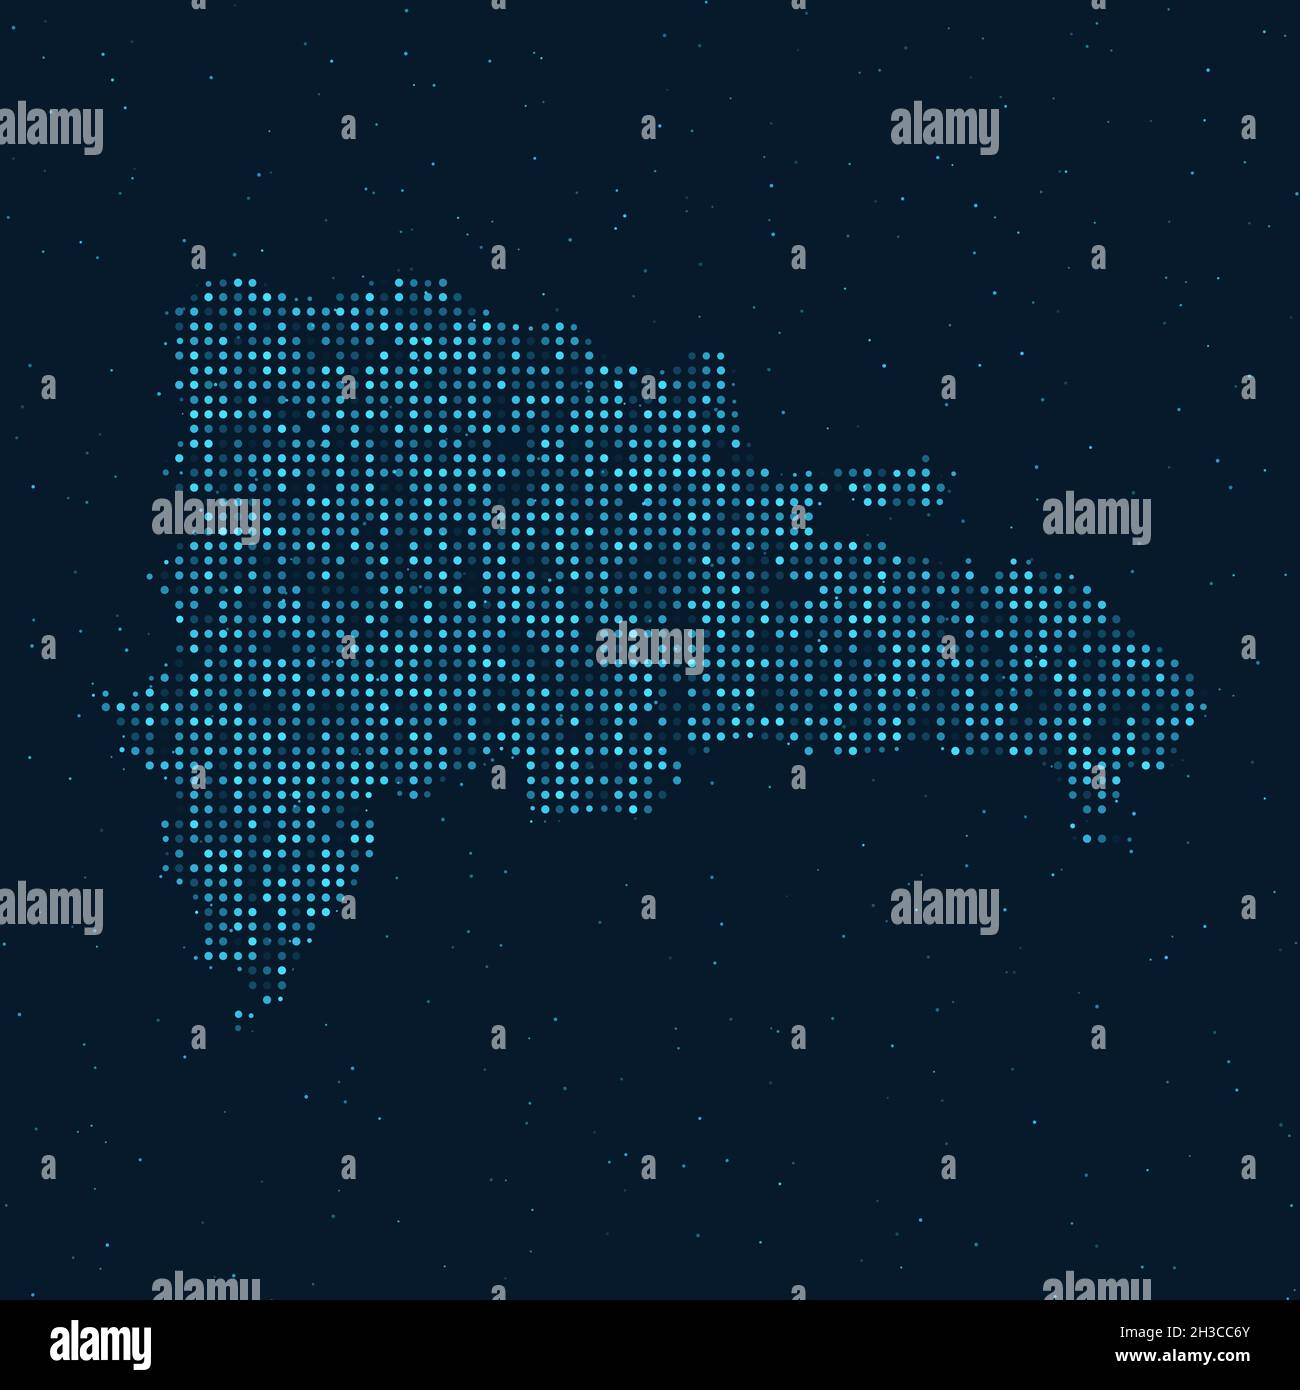 Mezzitoni punteggiati astratti con effetto stellato su sfondo blu scuro con mappa della Repubblica Dominicana. Tecnologia digitale punteggiata sfera di design e struttura Illustrazione Vettoriale